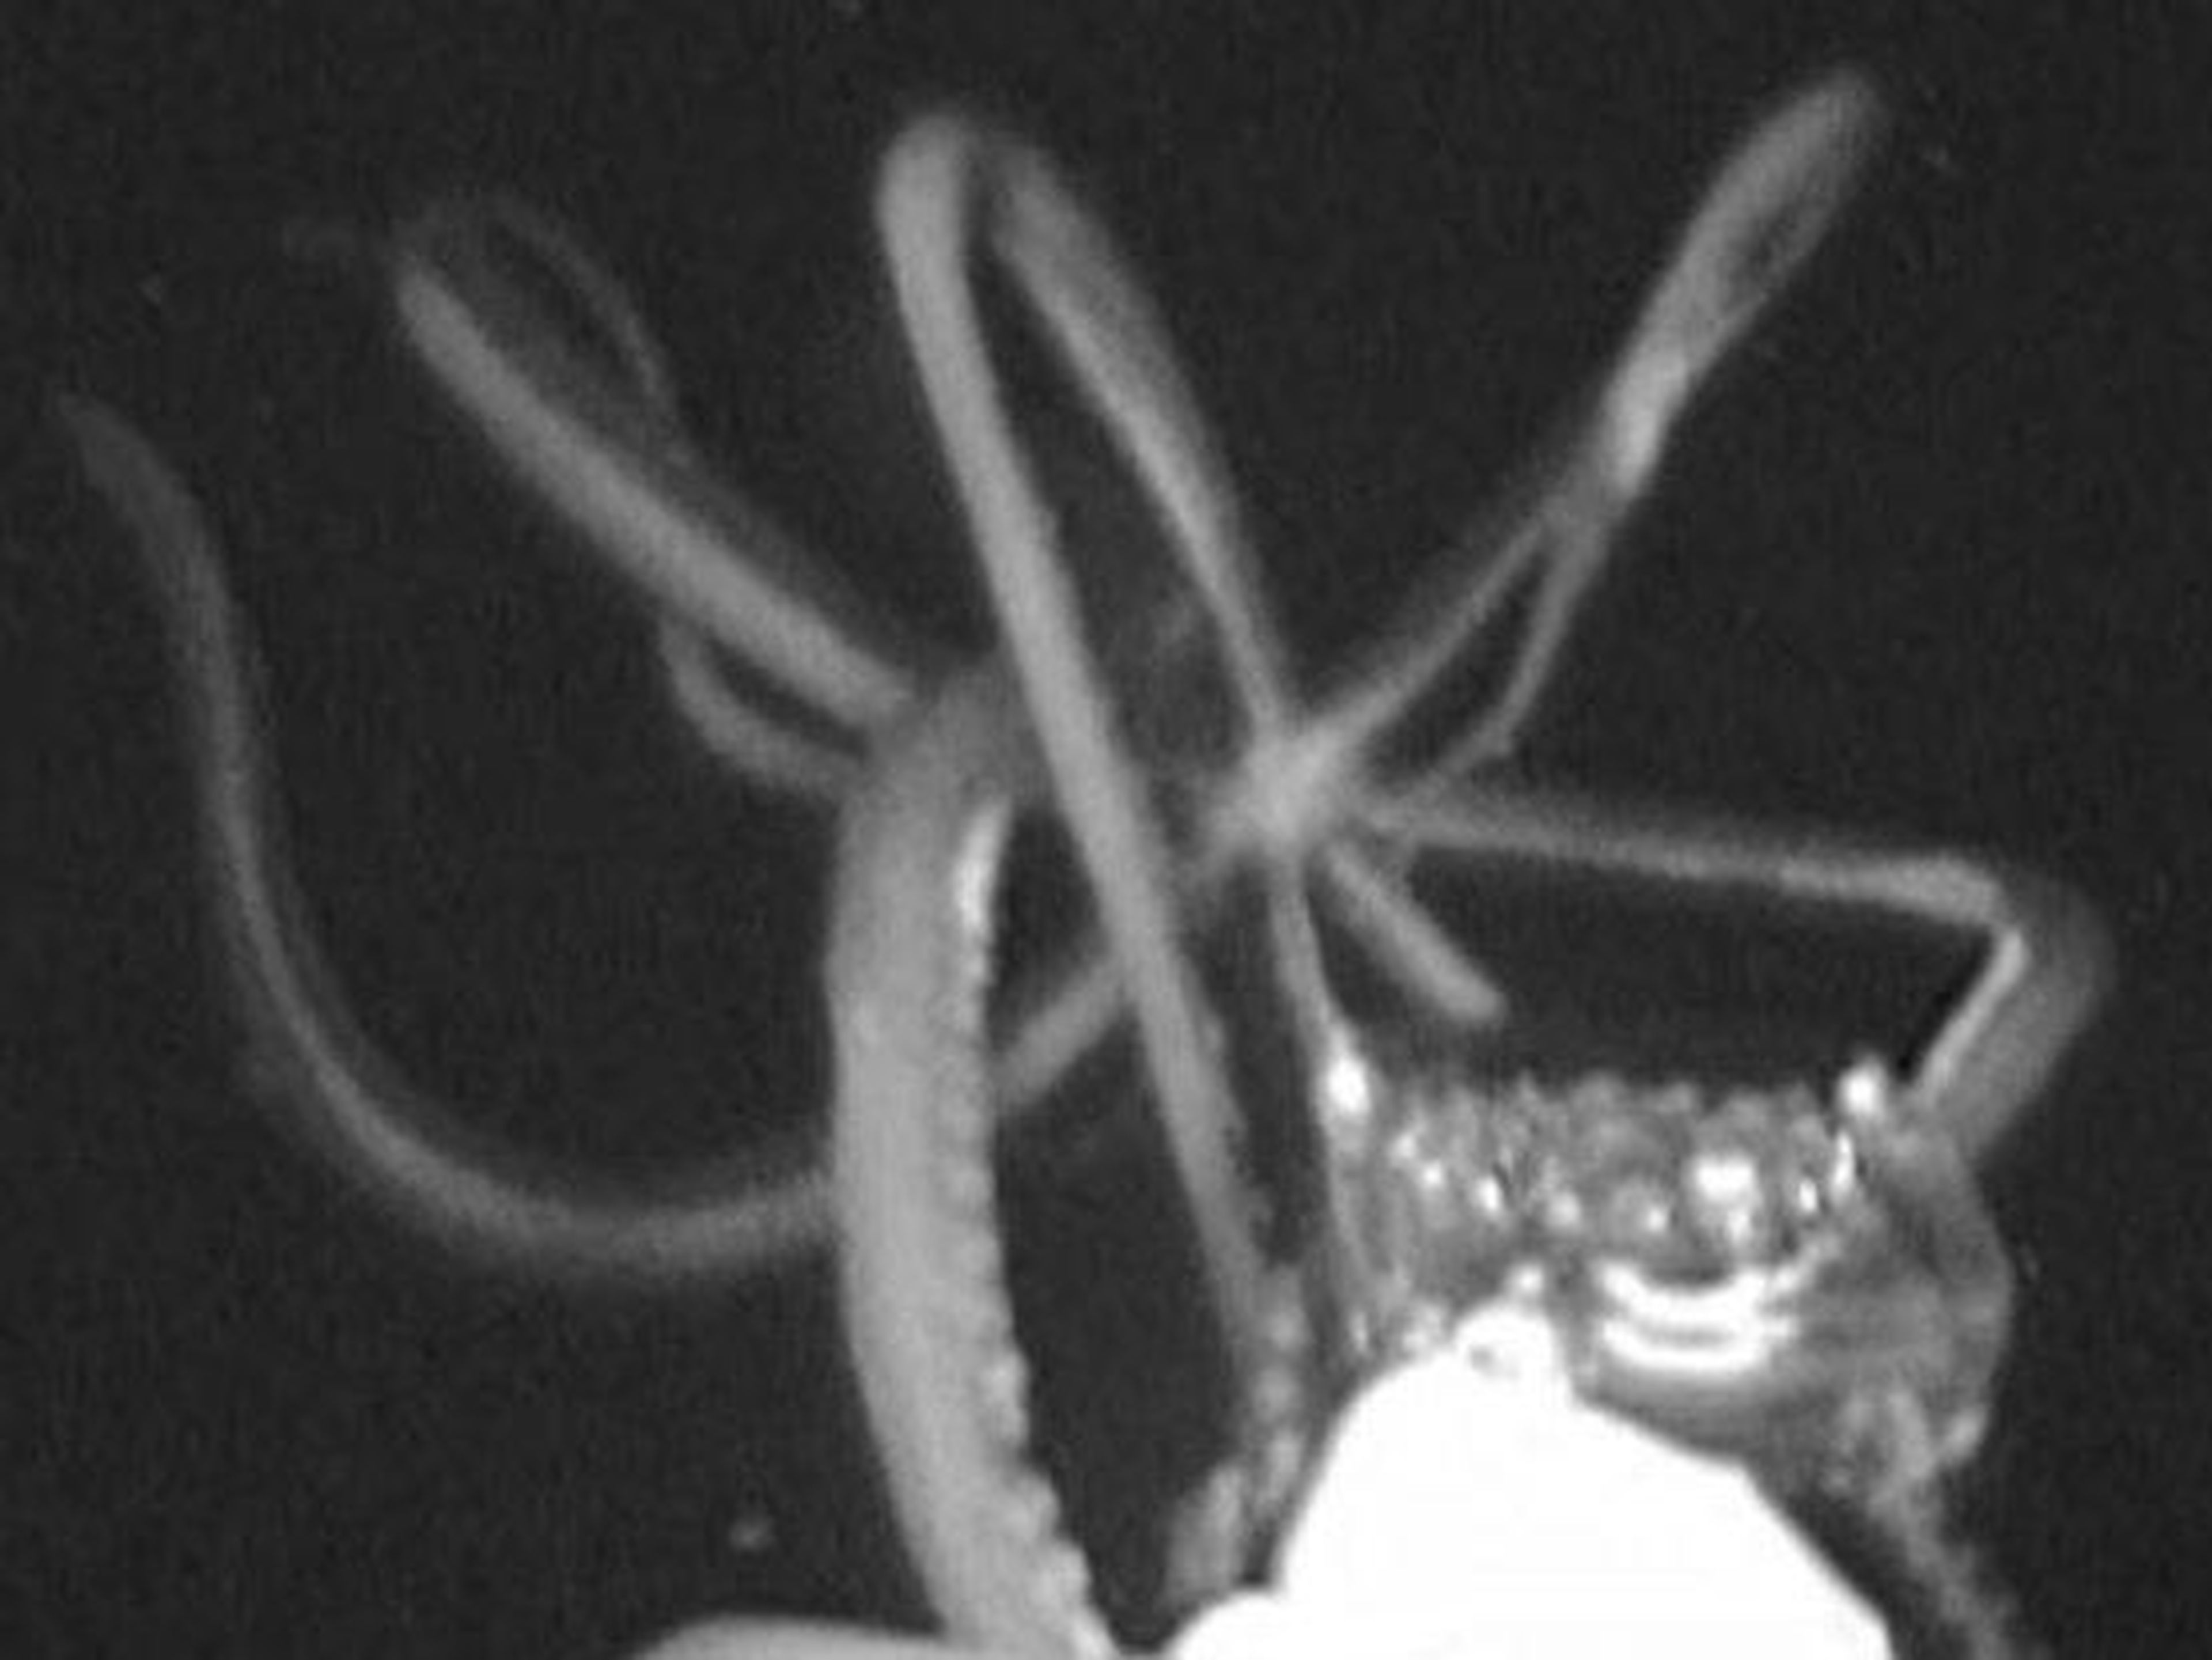 Un calamar gigante fue capturado por una cámara en el Golfo de México.